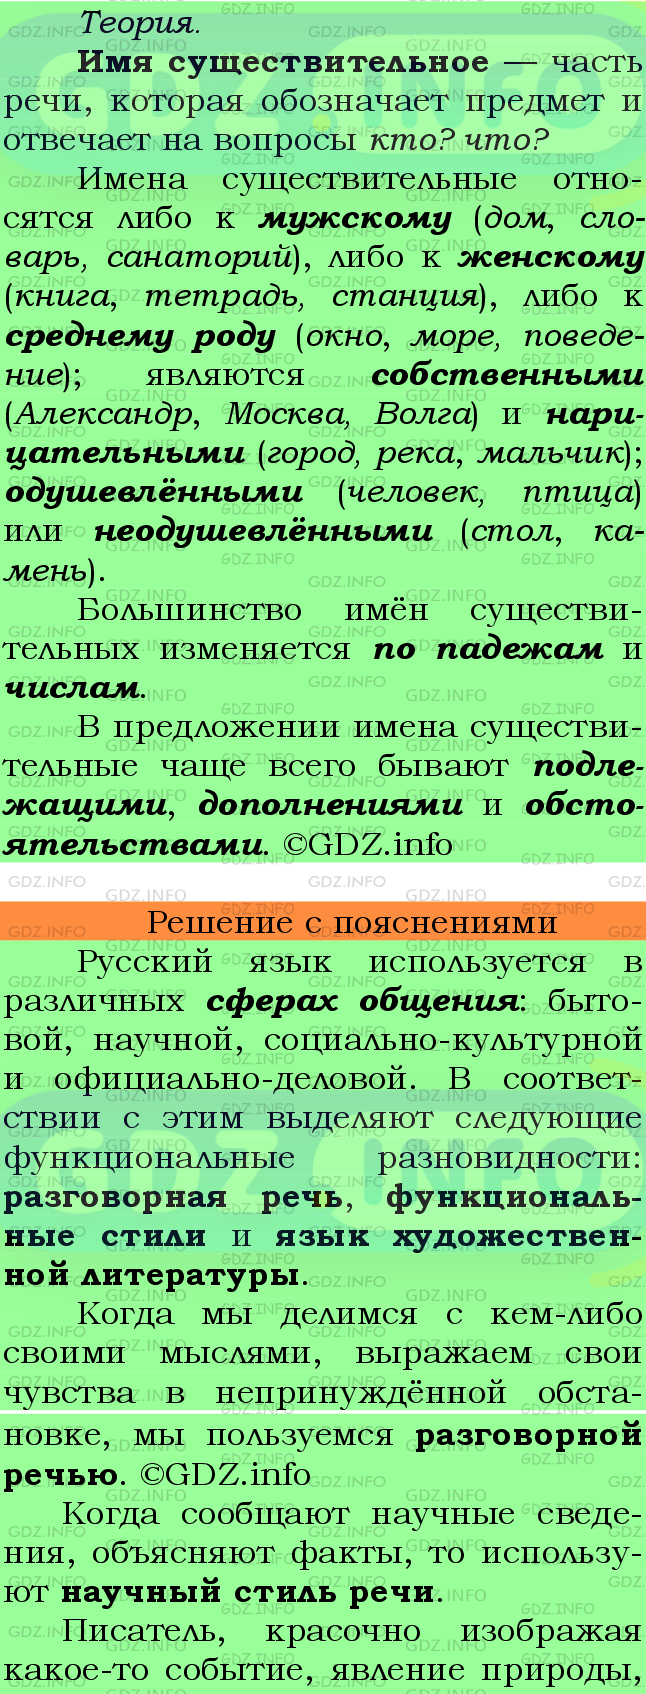 Фото подробного решения: Номер №363 из ГДЗ по Русскому языку 6 класс: Ладыженская Т.А.